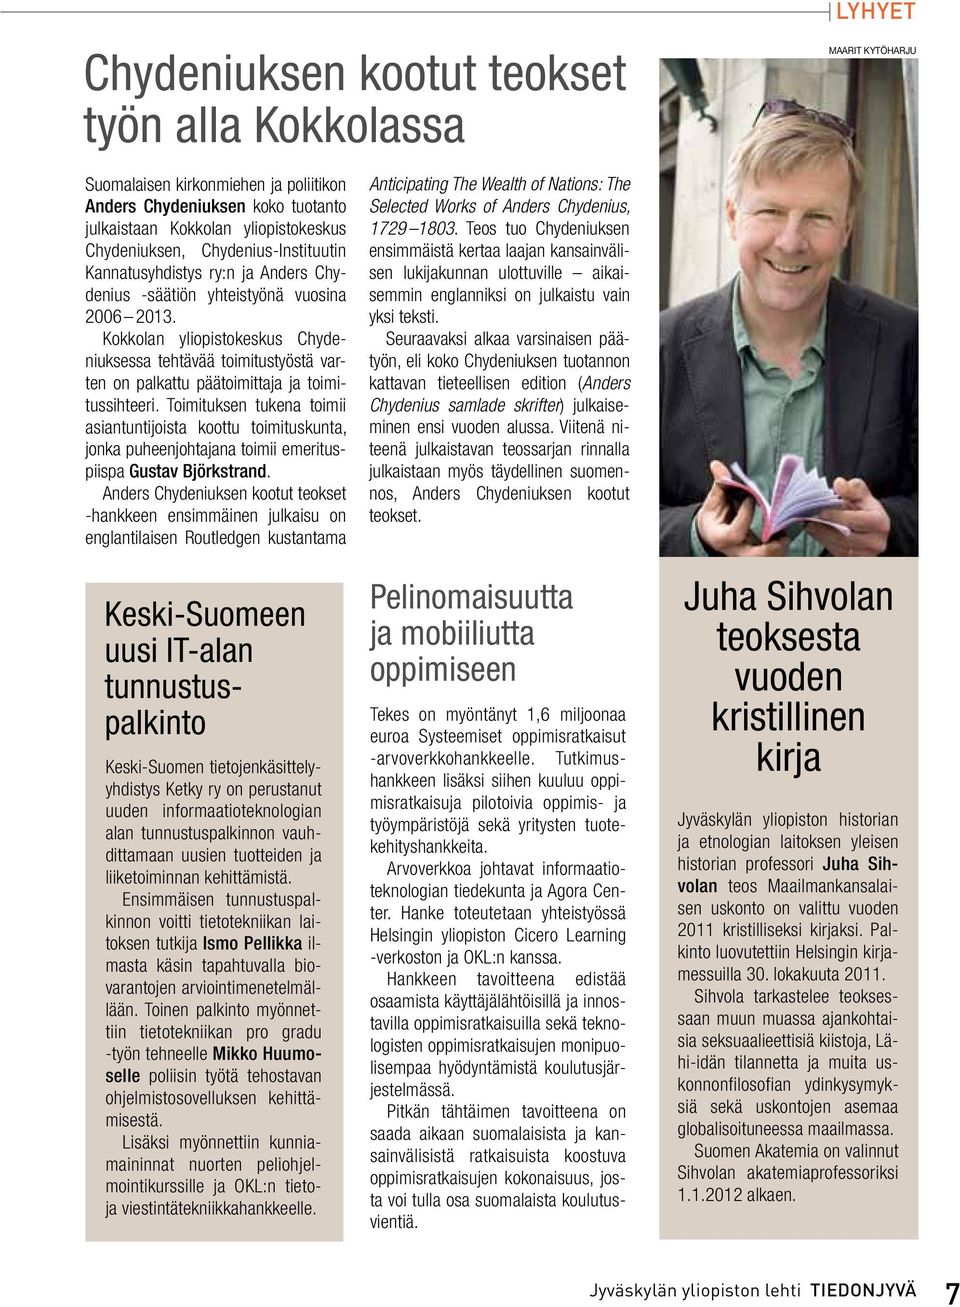 Kokkolan yliopistokeskus Chydeniuksessa tehtävää toimitustyöstä varten on palkattu päätoimittaja ja toimitussihteeri.